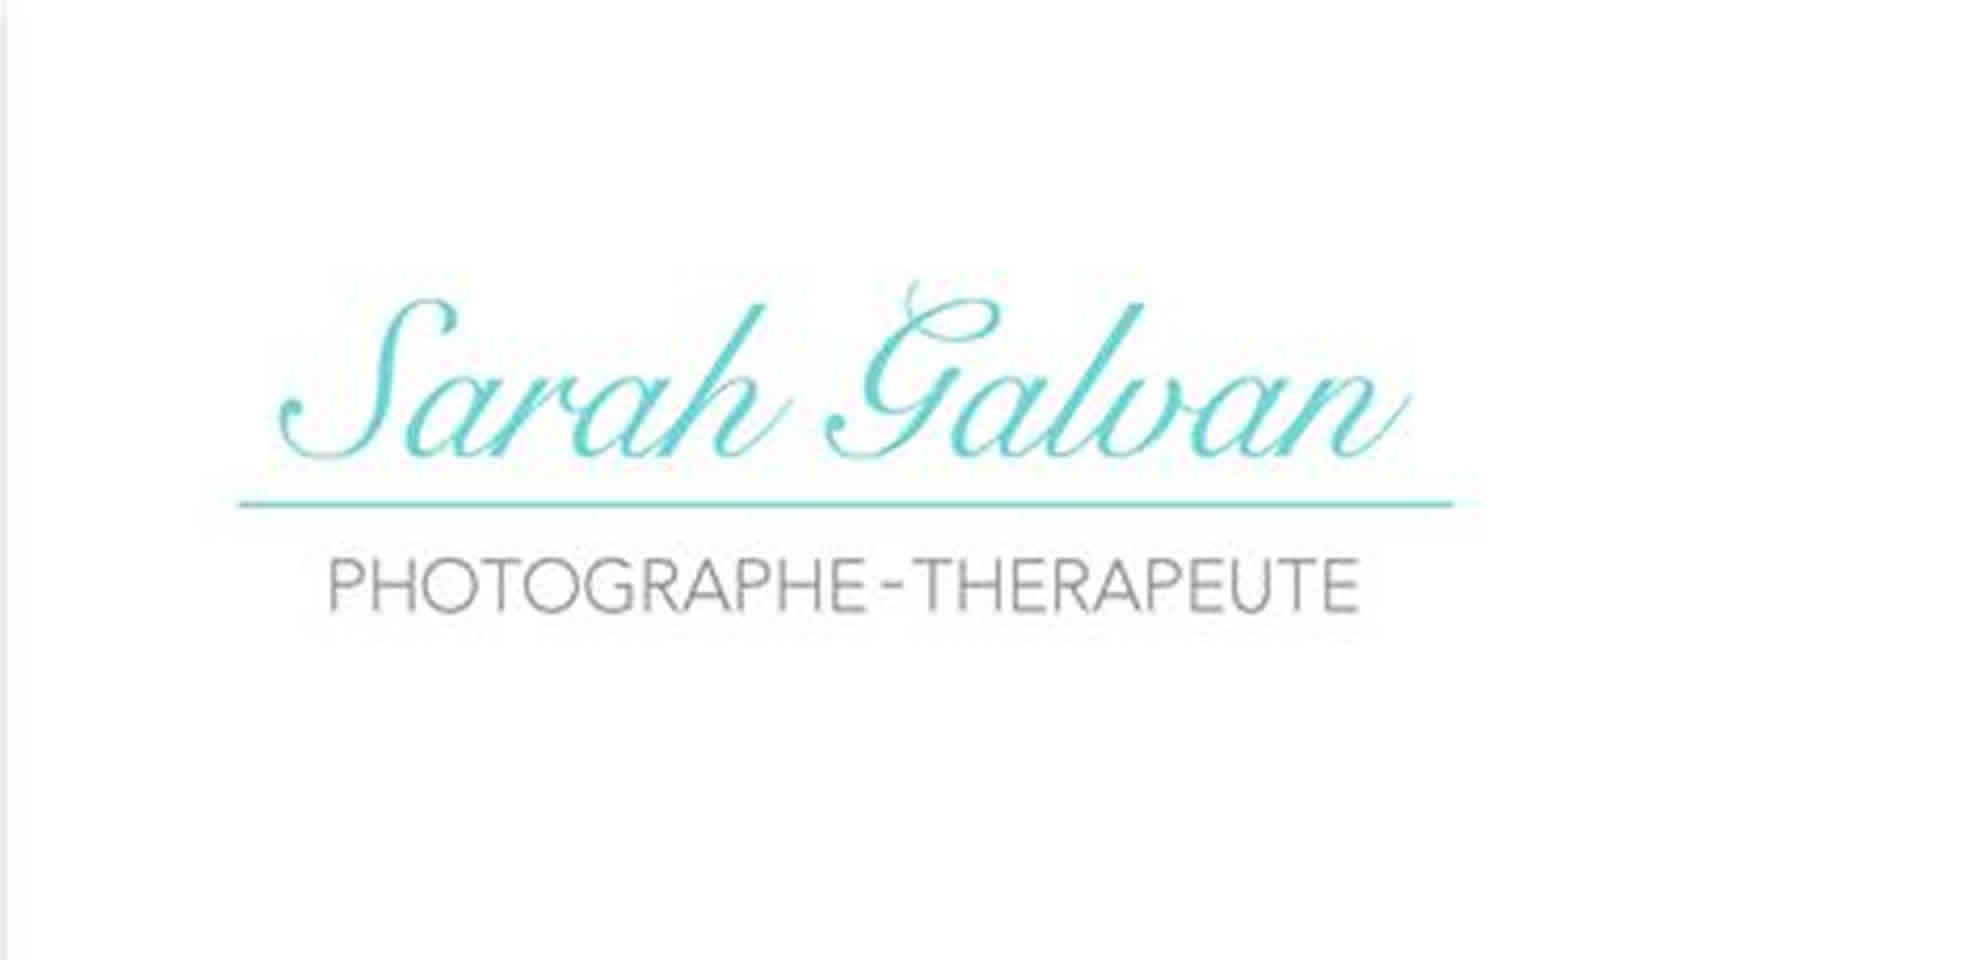 Sarah Galvan Photographe